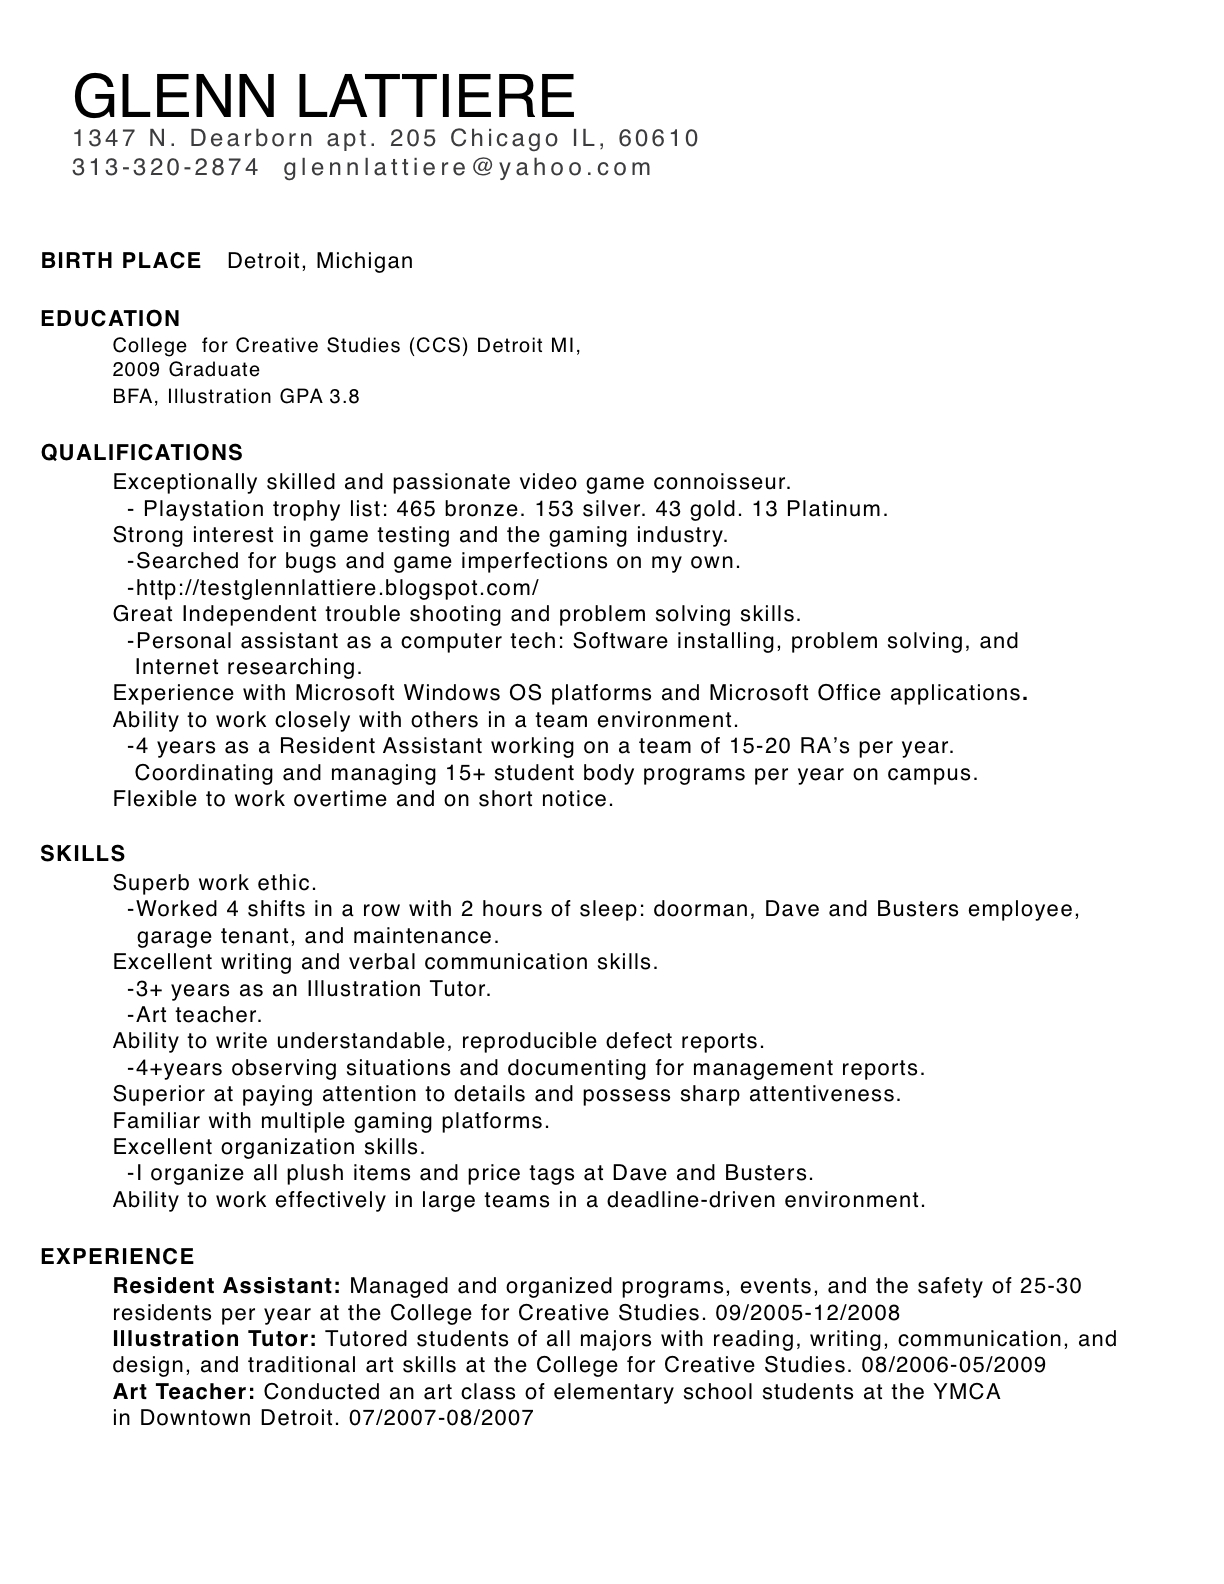 Tester sample resume